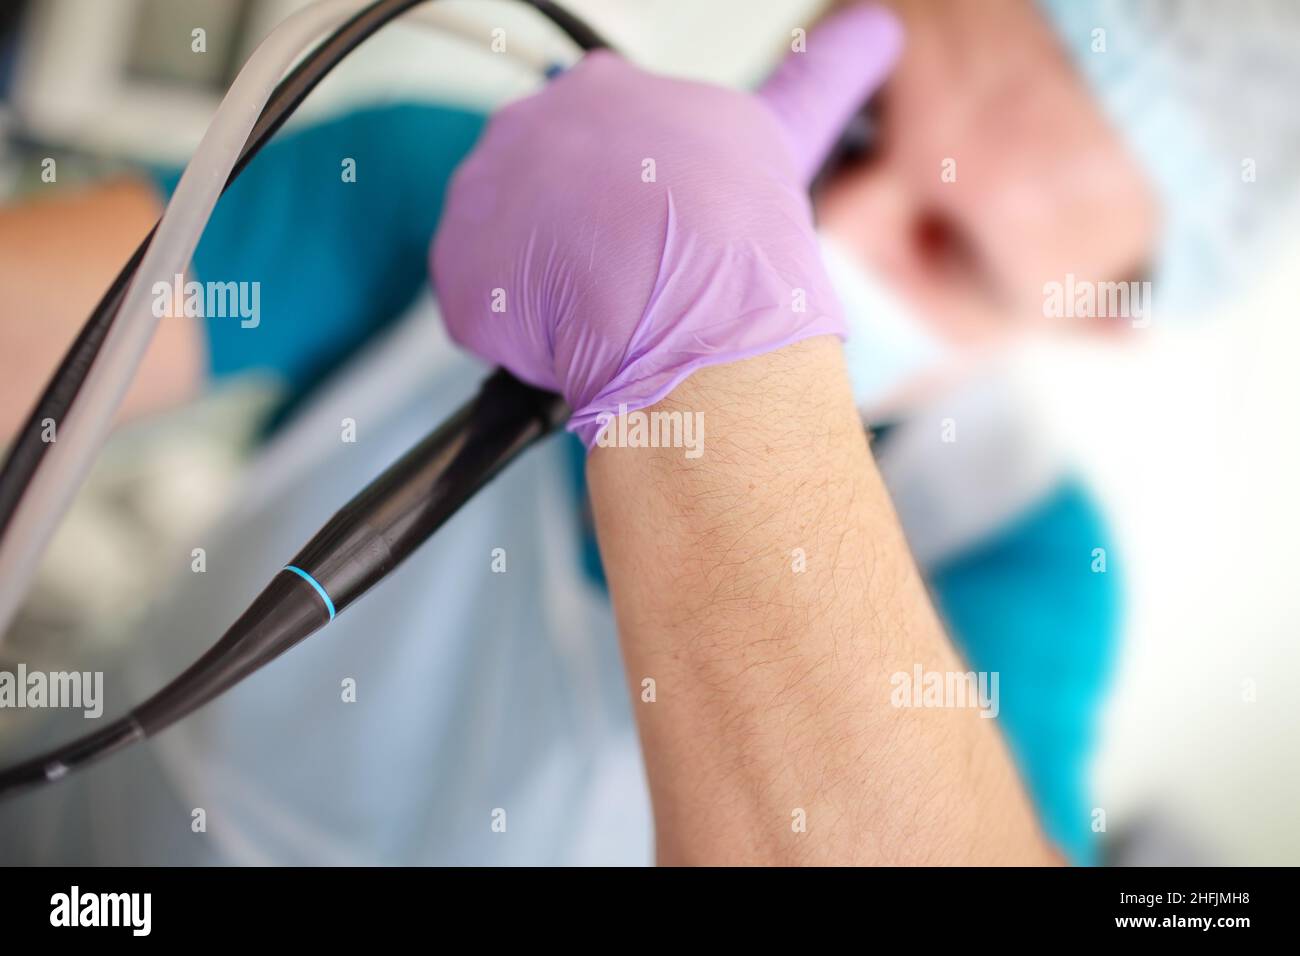 Männlicher Arztarm mit endoskopischem Werkzeug während des Eingriffs. Stockfoto